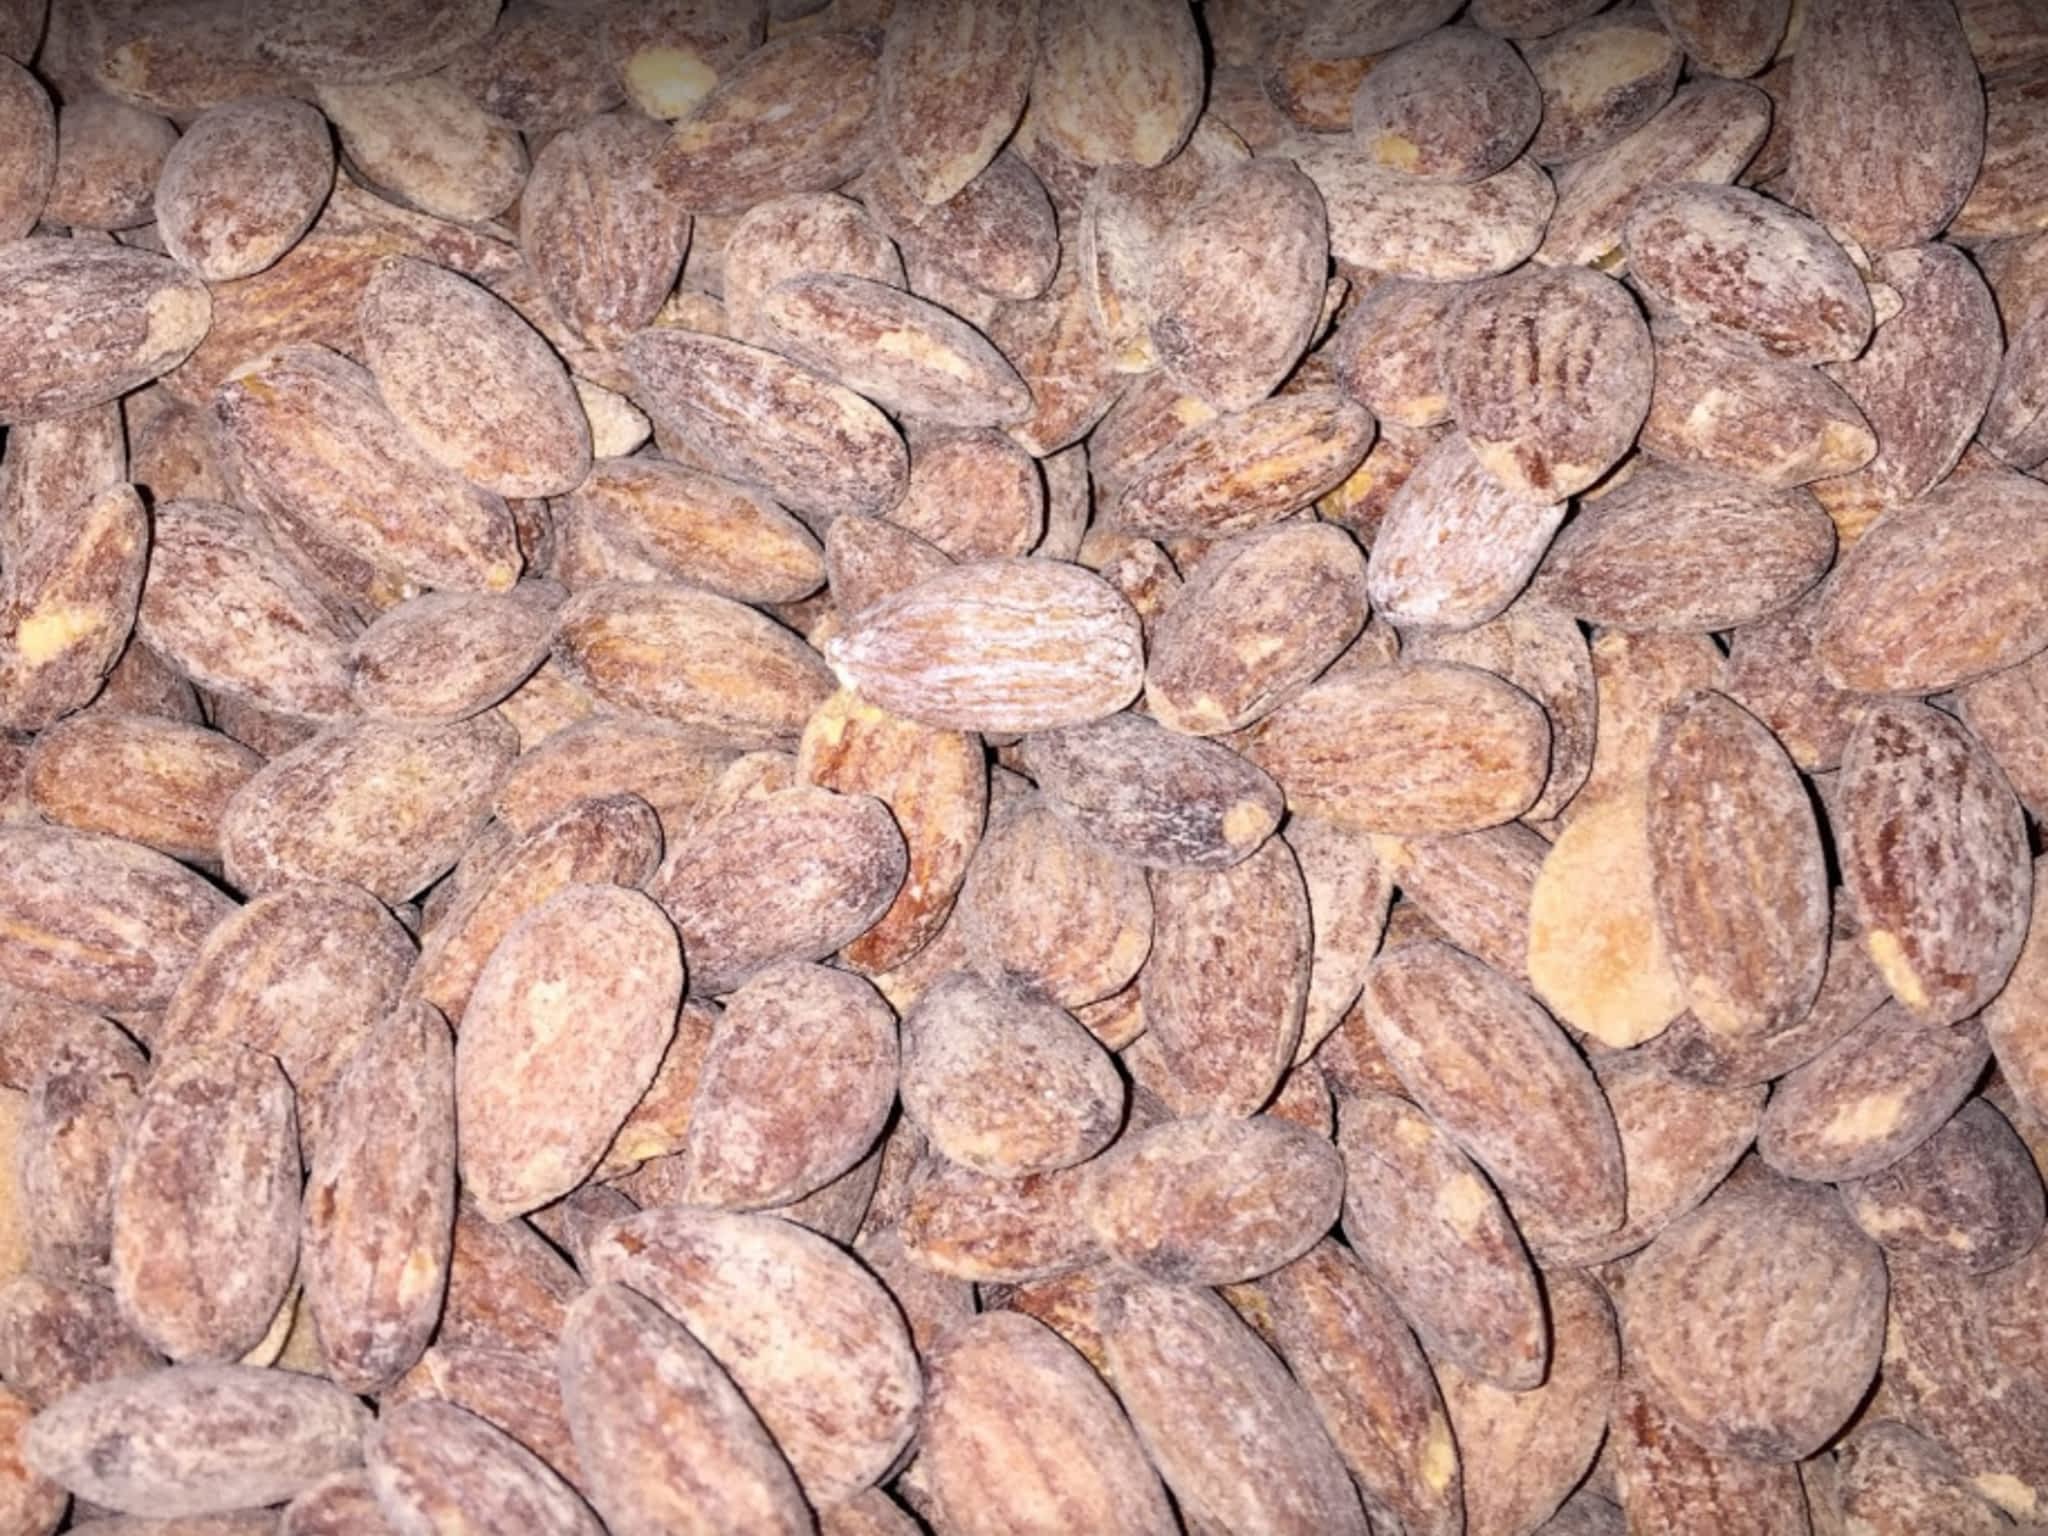 photo Roasted Nut Factory